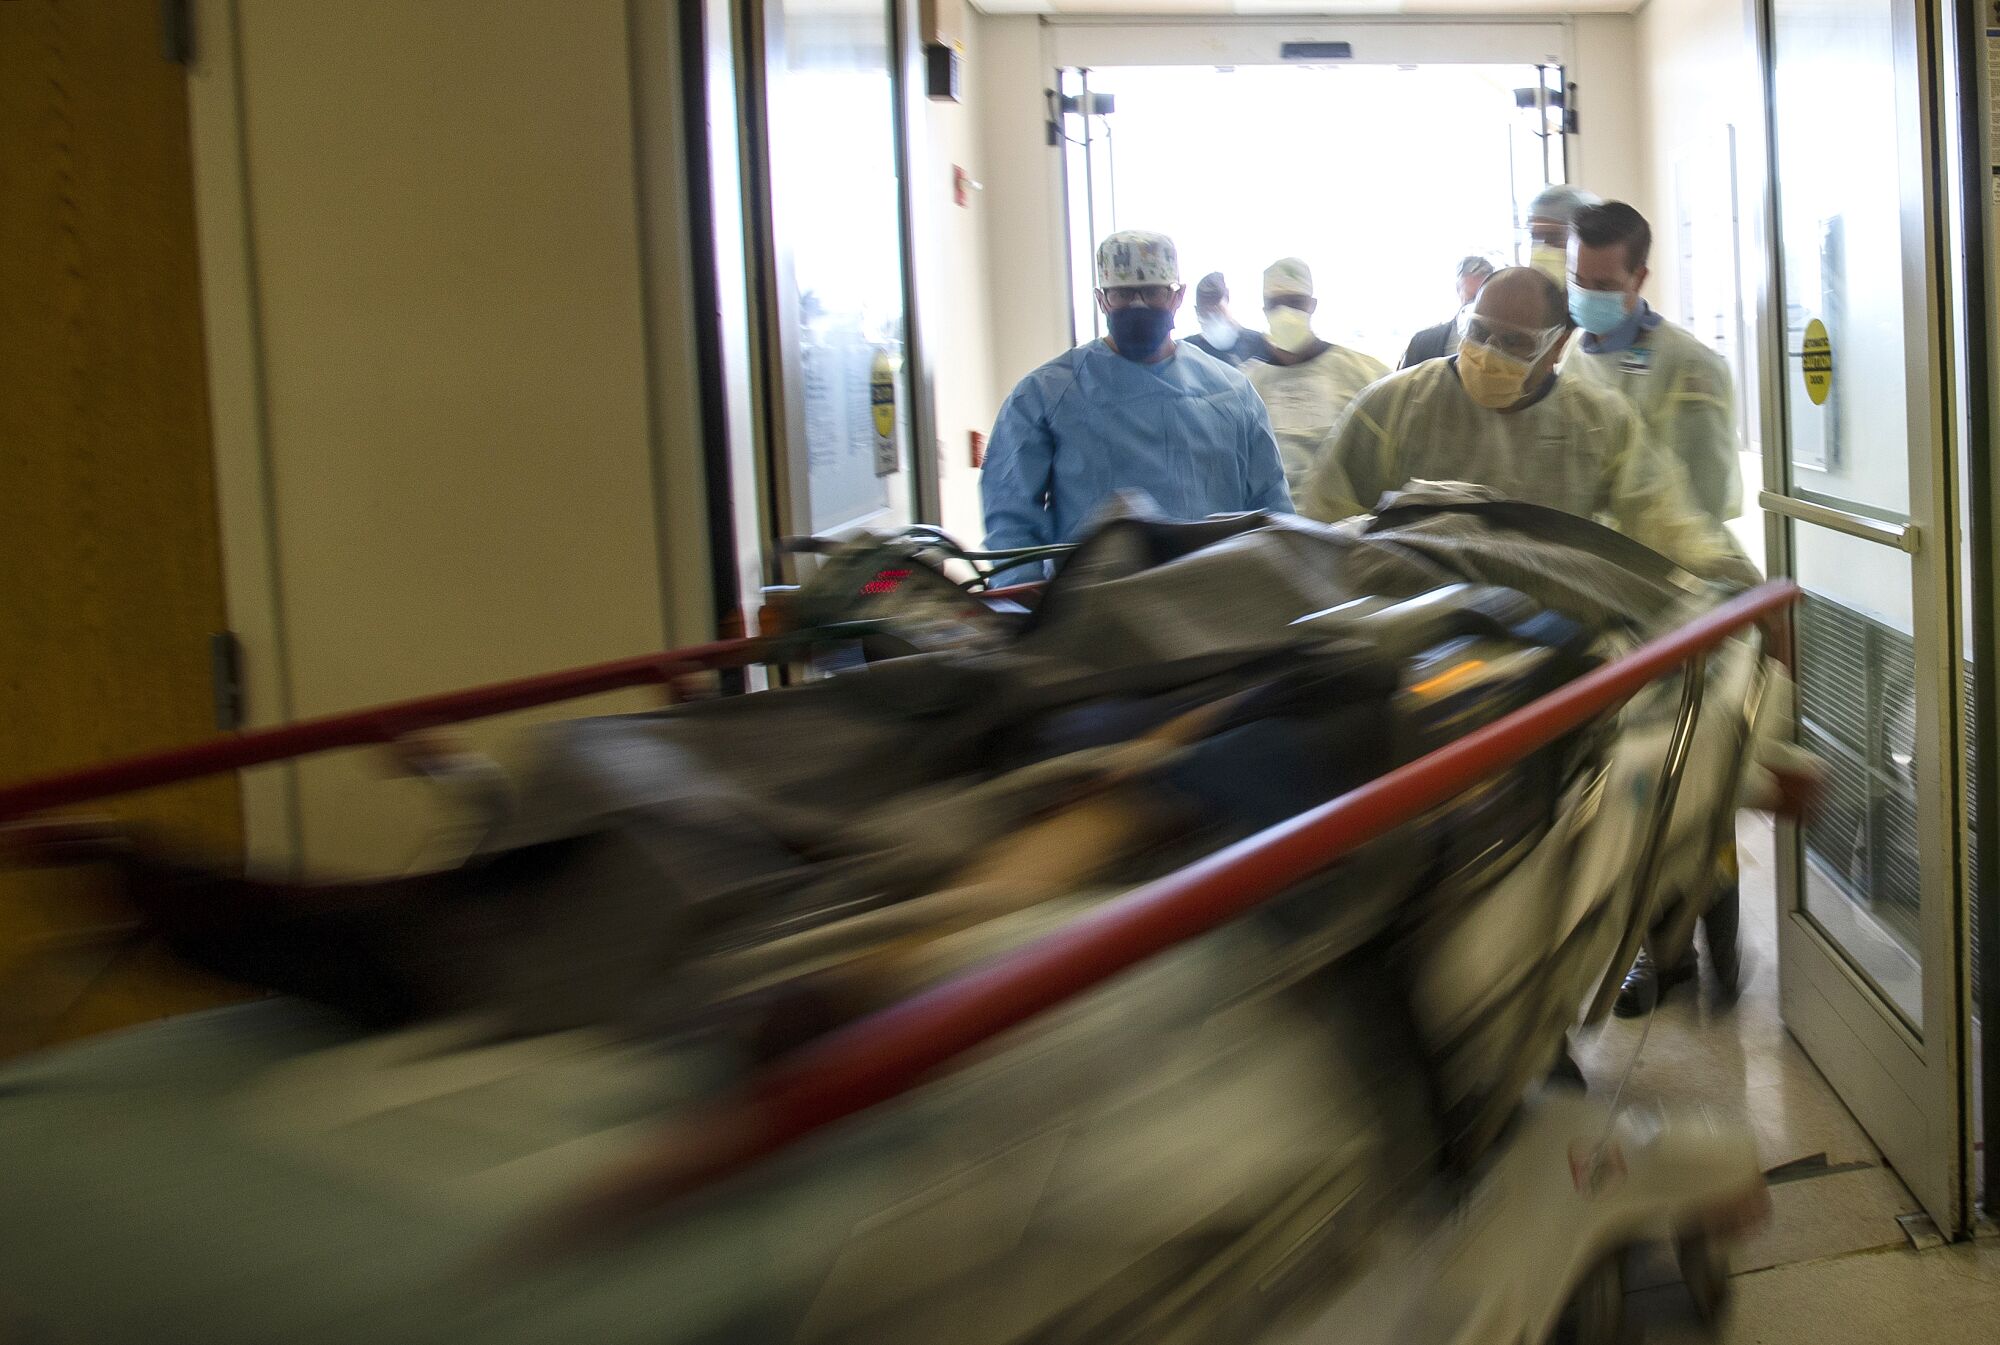 A hospital gurney streaks by, pushed by men wearing masks.